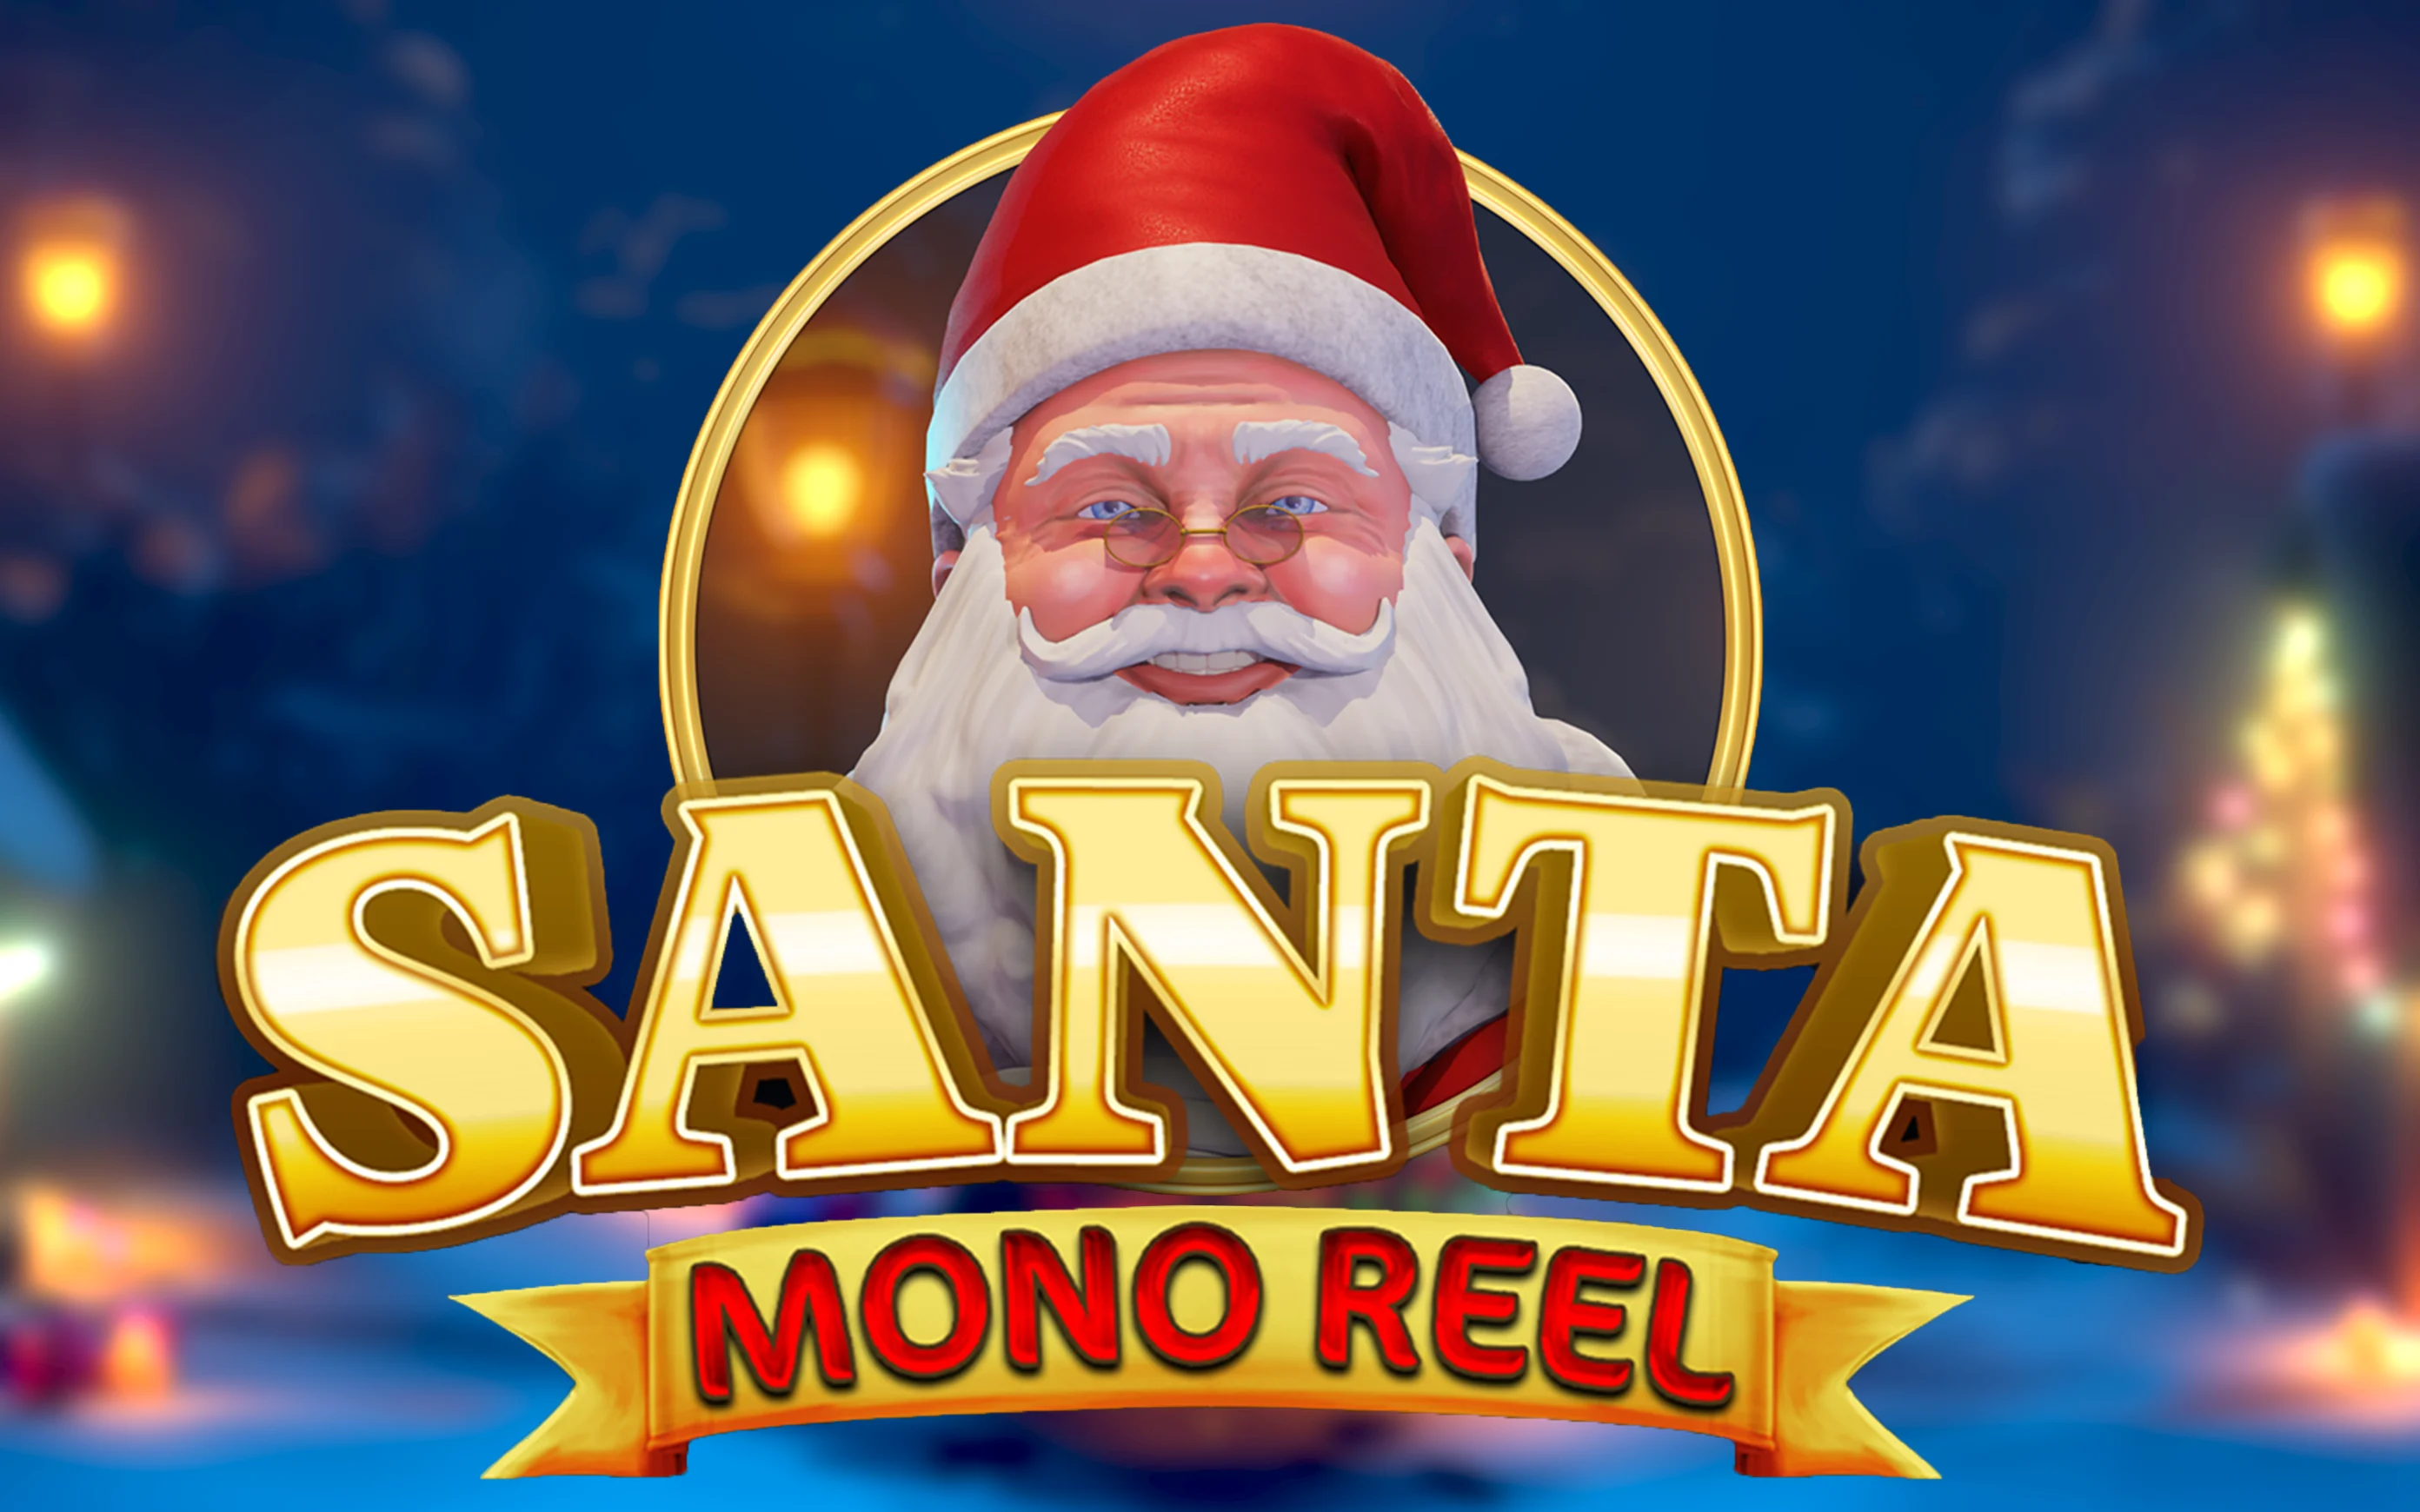 Παίξτε Mono Reel Santa στο online καζίνο Starcasino.be